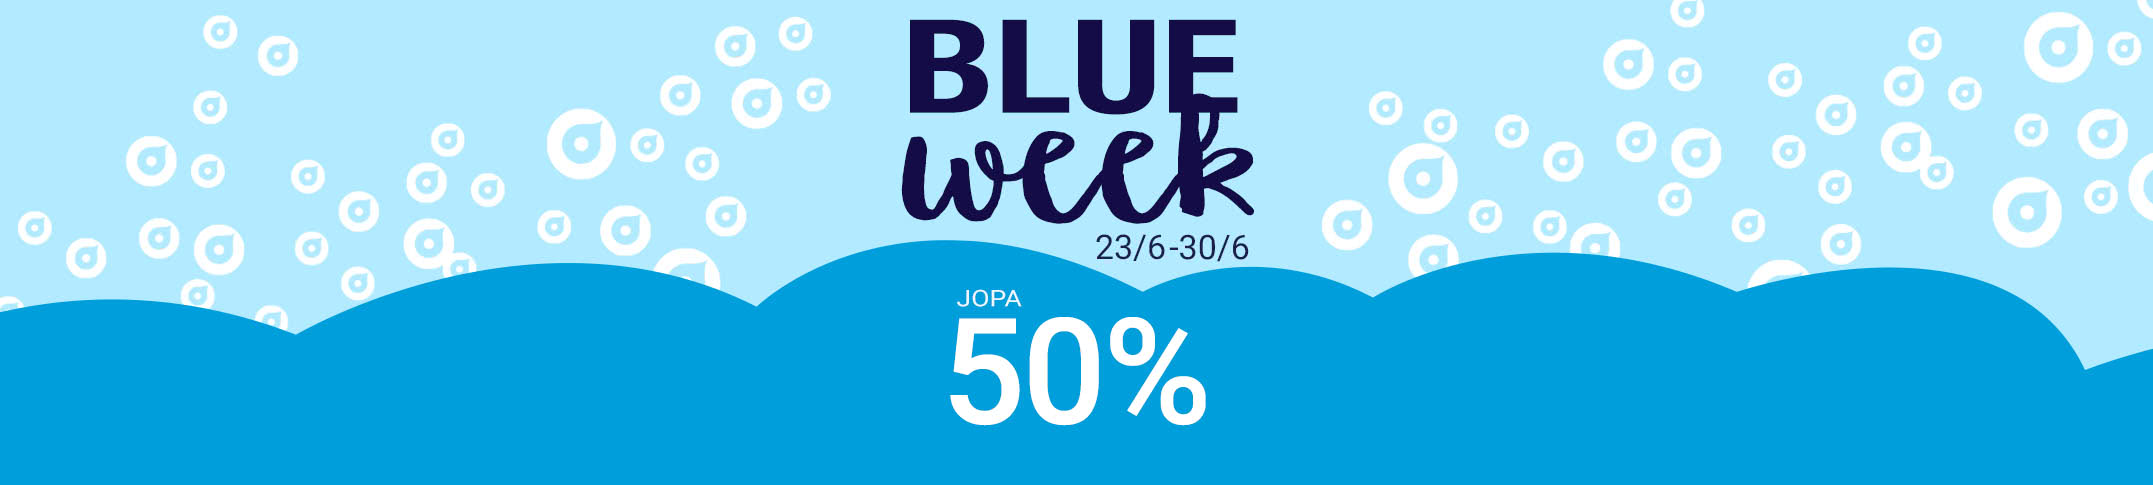 💙 Blue Week - Jopa 50% ale! | Smartphoto